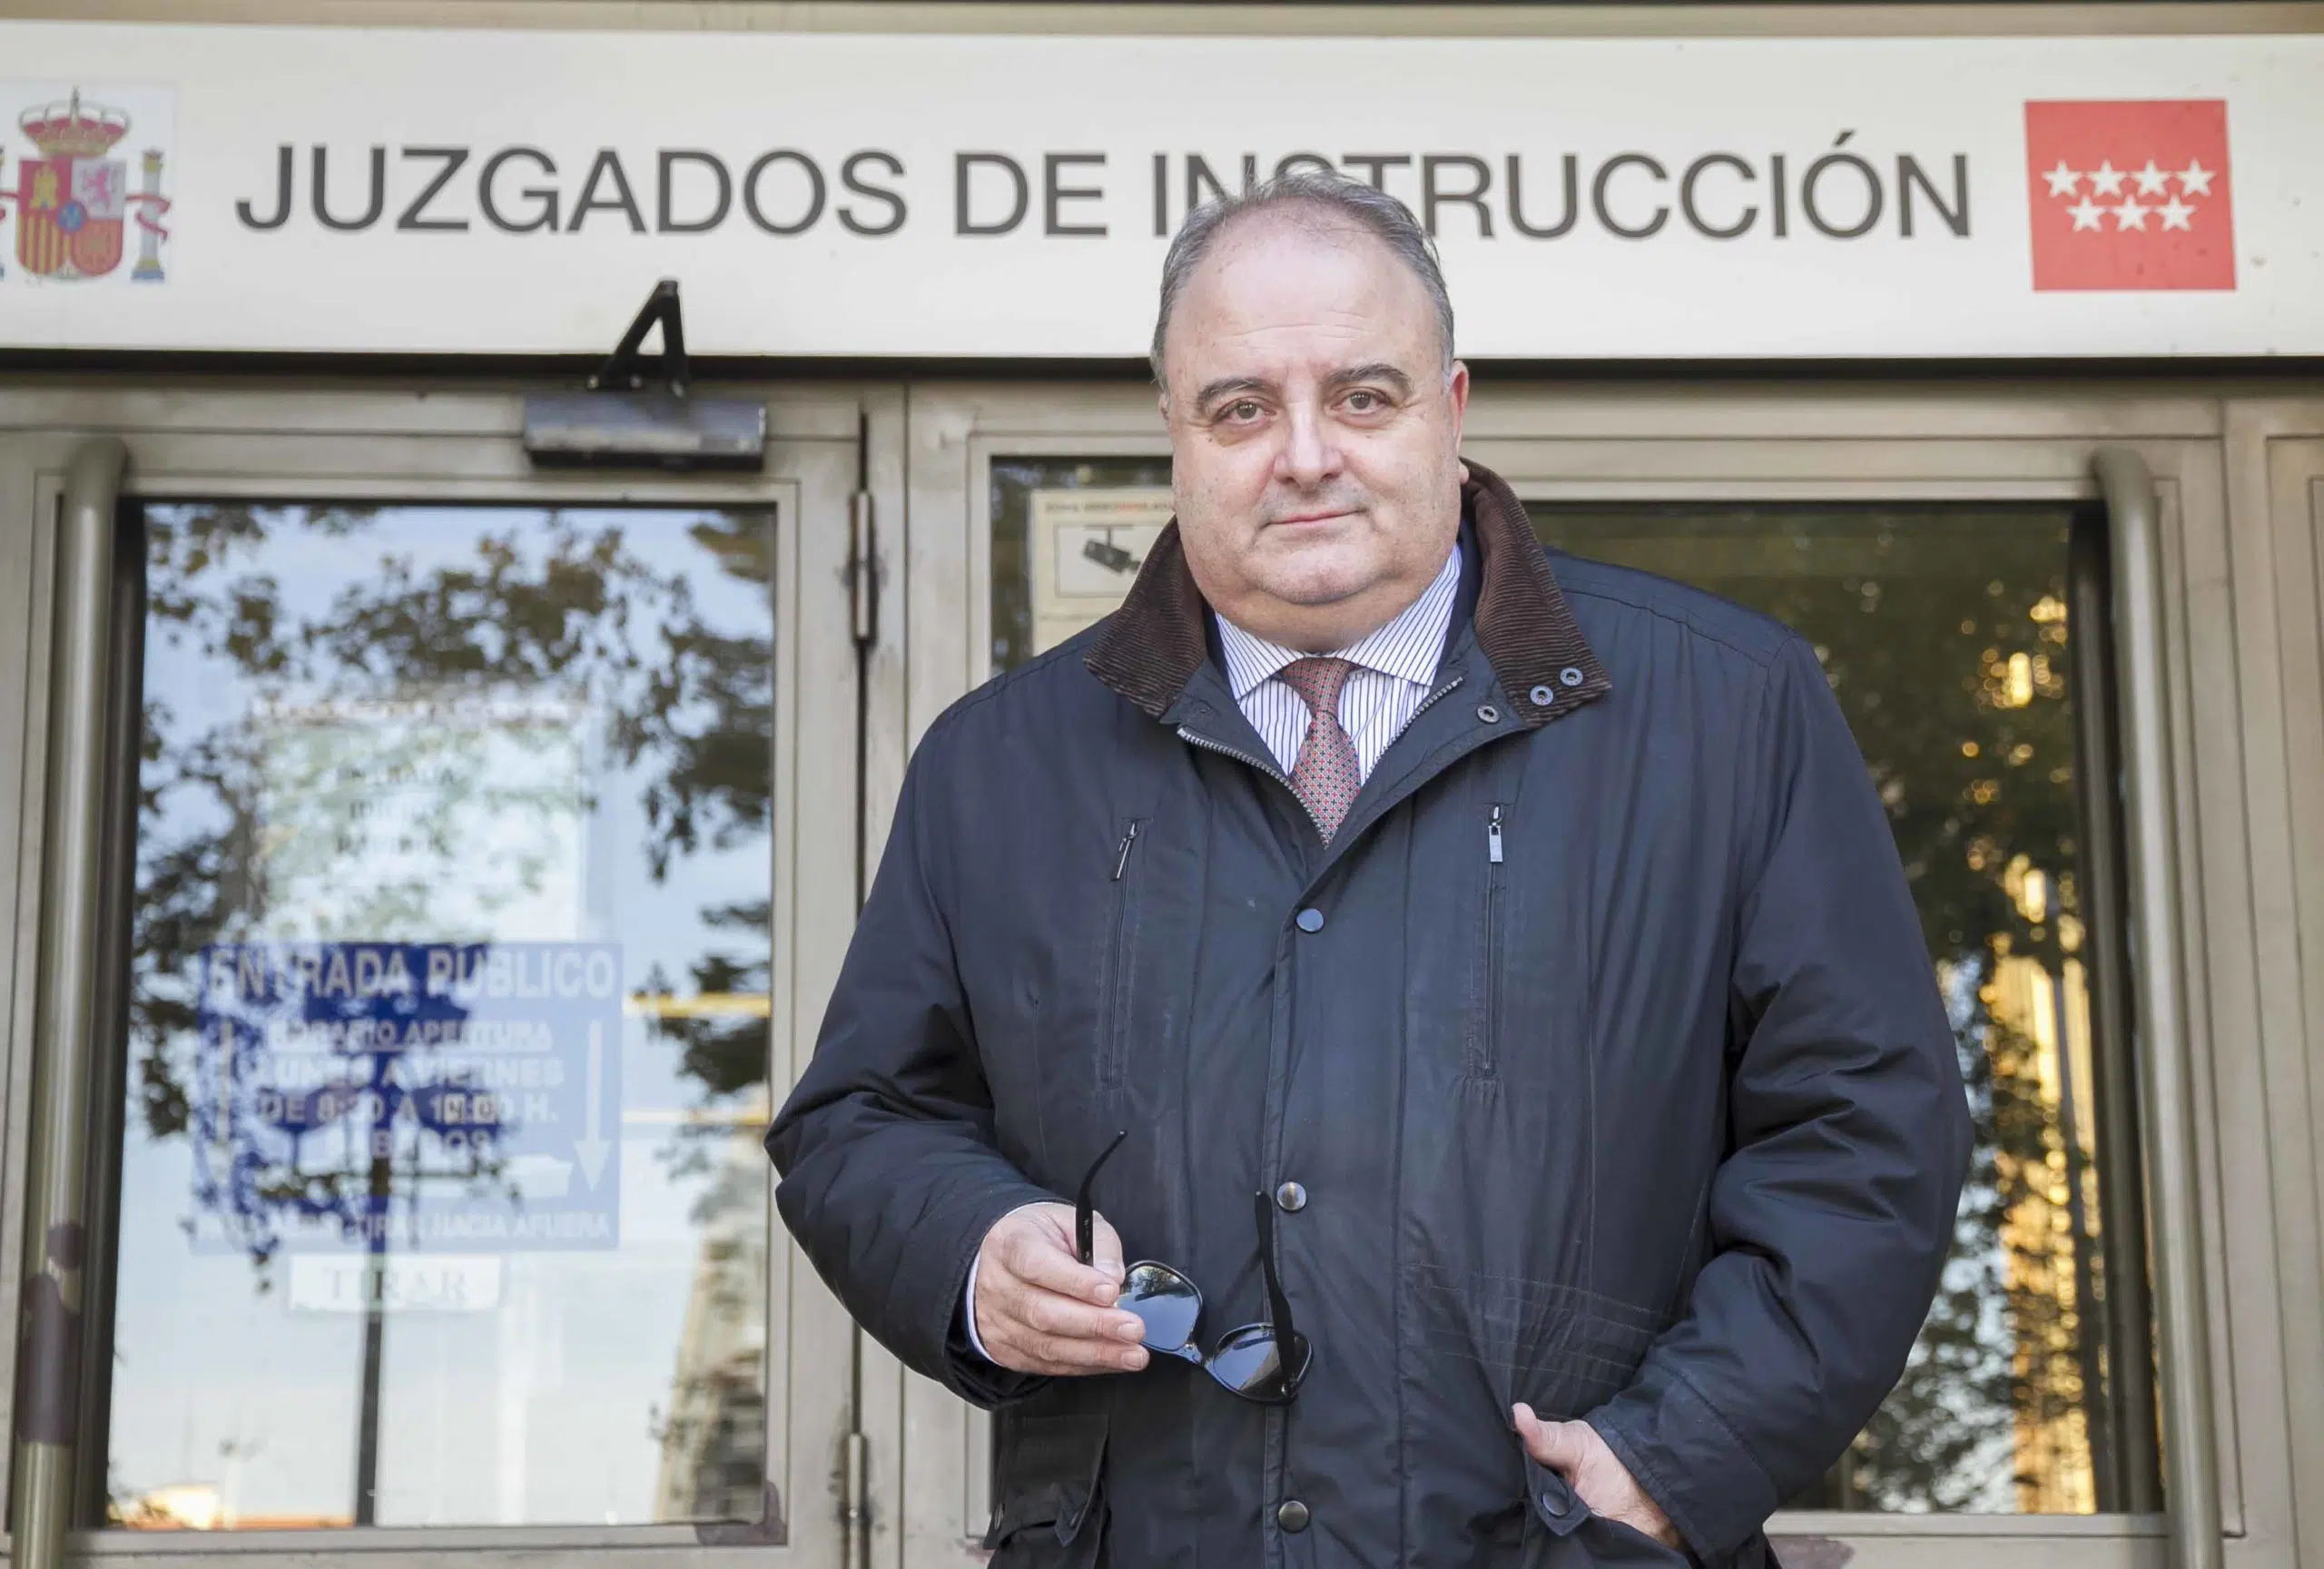 El magistrado Adolfo Carretero admite a trámite una denuncia por la votación de la reforma laboral